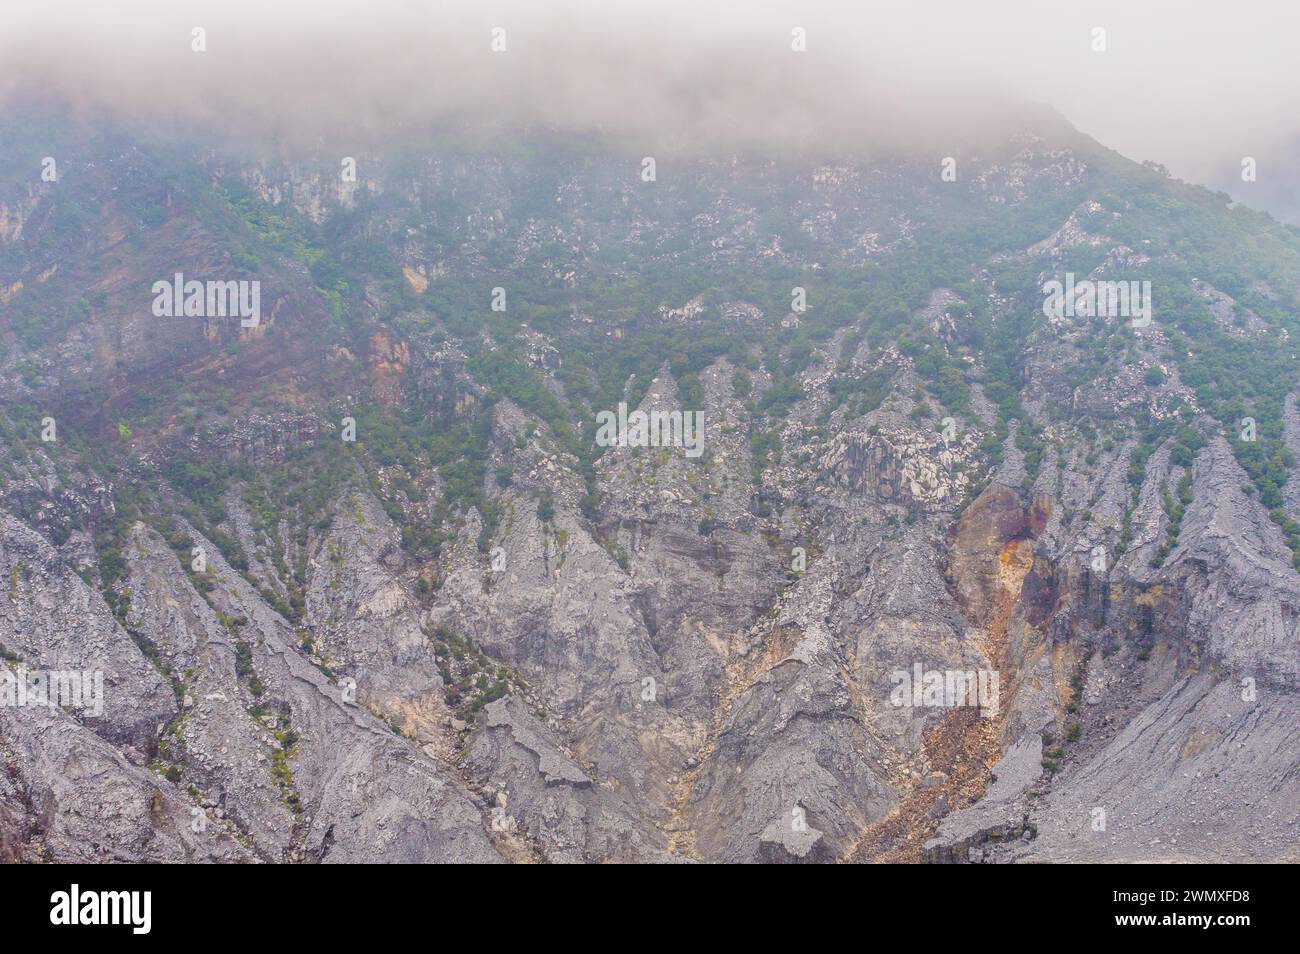 Paisaje árido con montañas brumosas, vegetación escasa y formaciones rocosas, en Indonesia Foto de stock